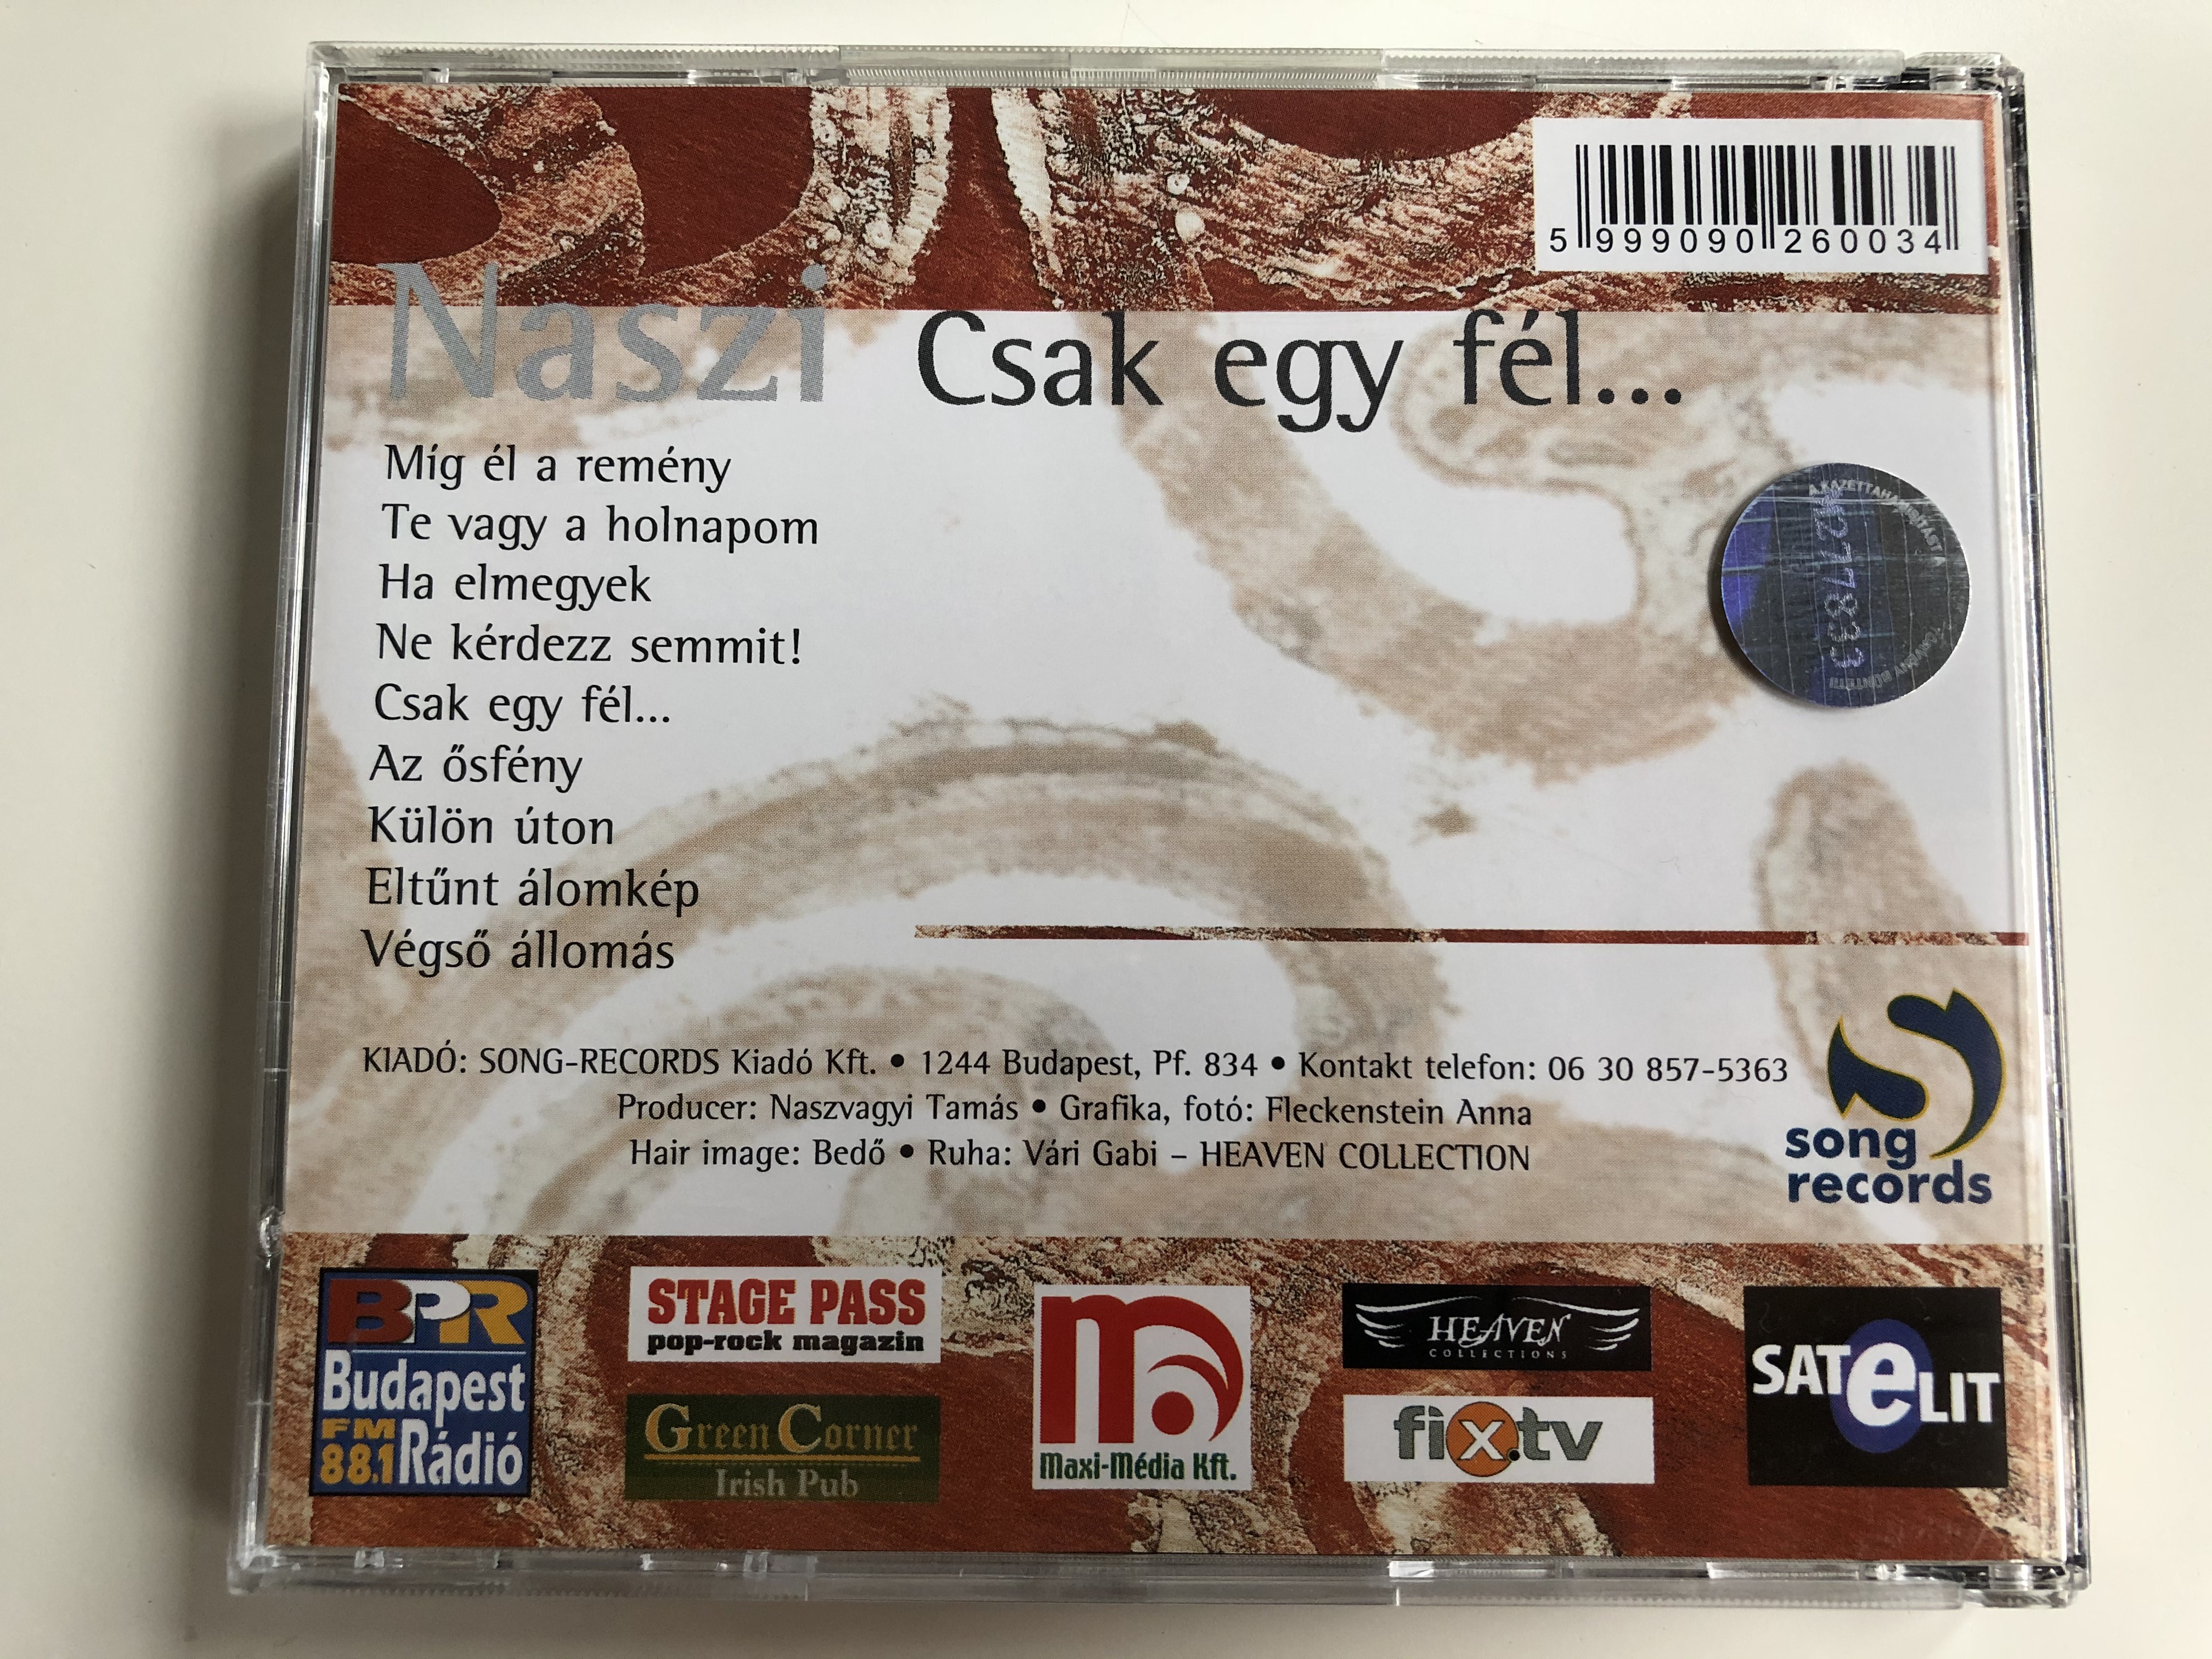 csak-egy-f-l...-naszi-song-records-audio-cd-2001-songcd-003-4-.jpg